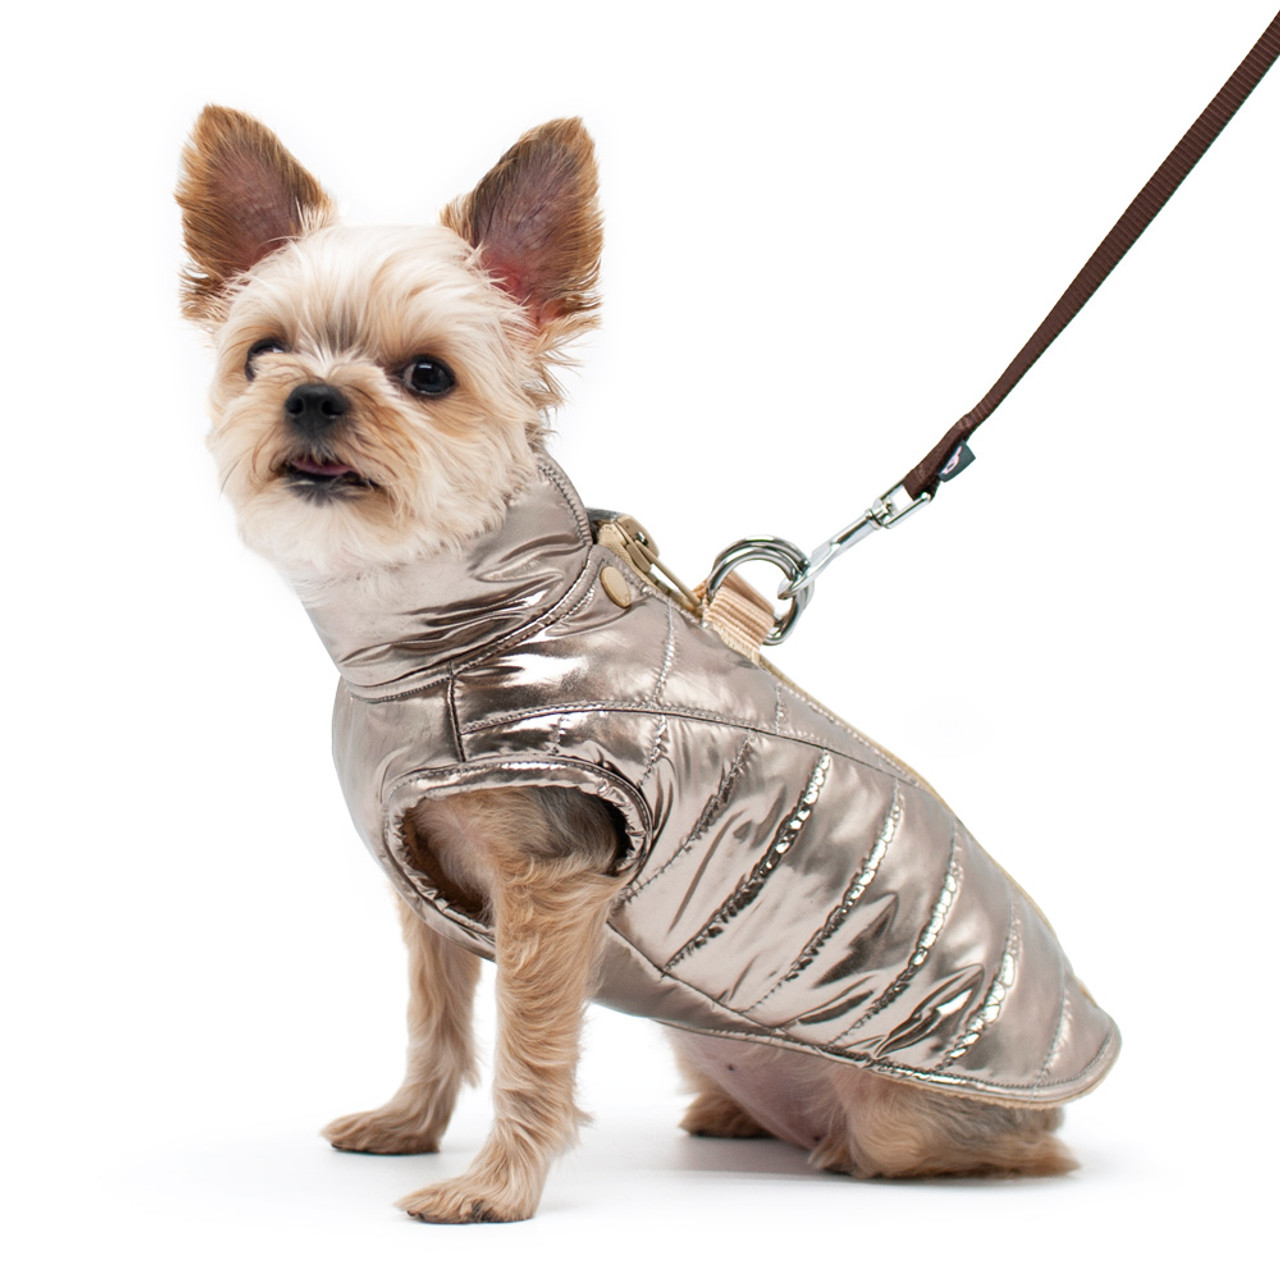 Dogo Metallic Runner Coat with Built In Harness